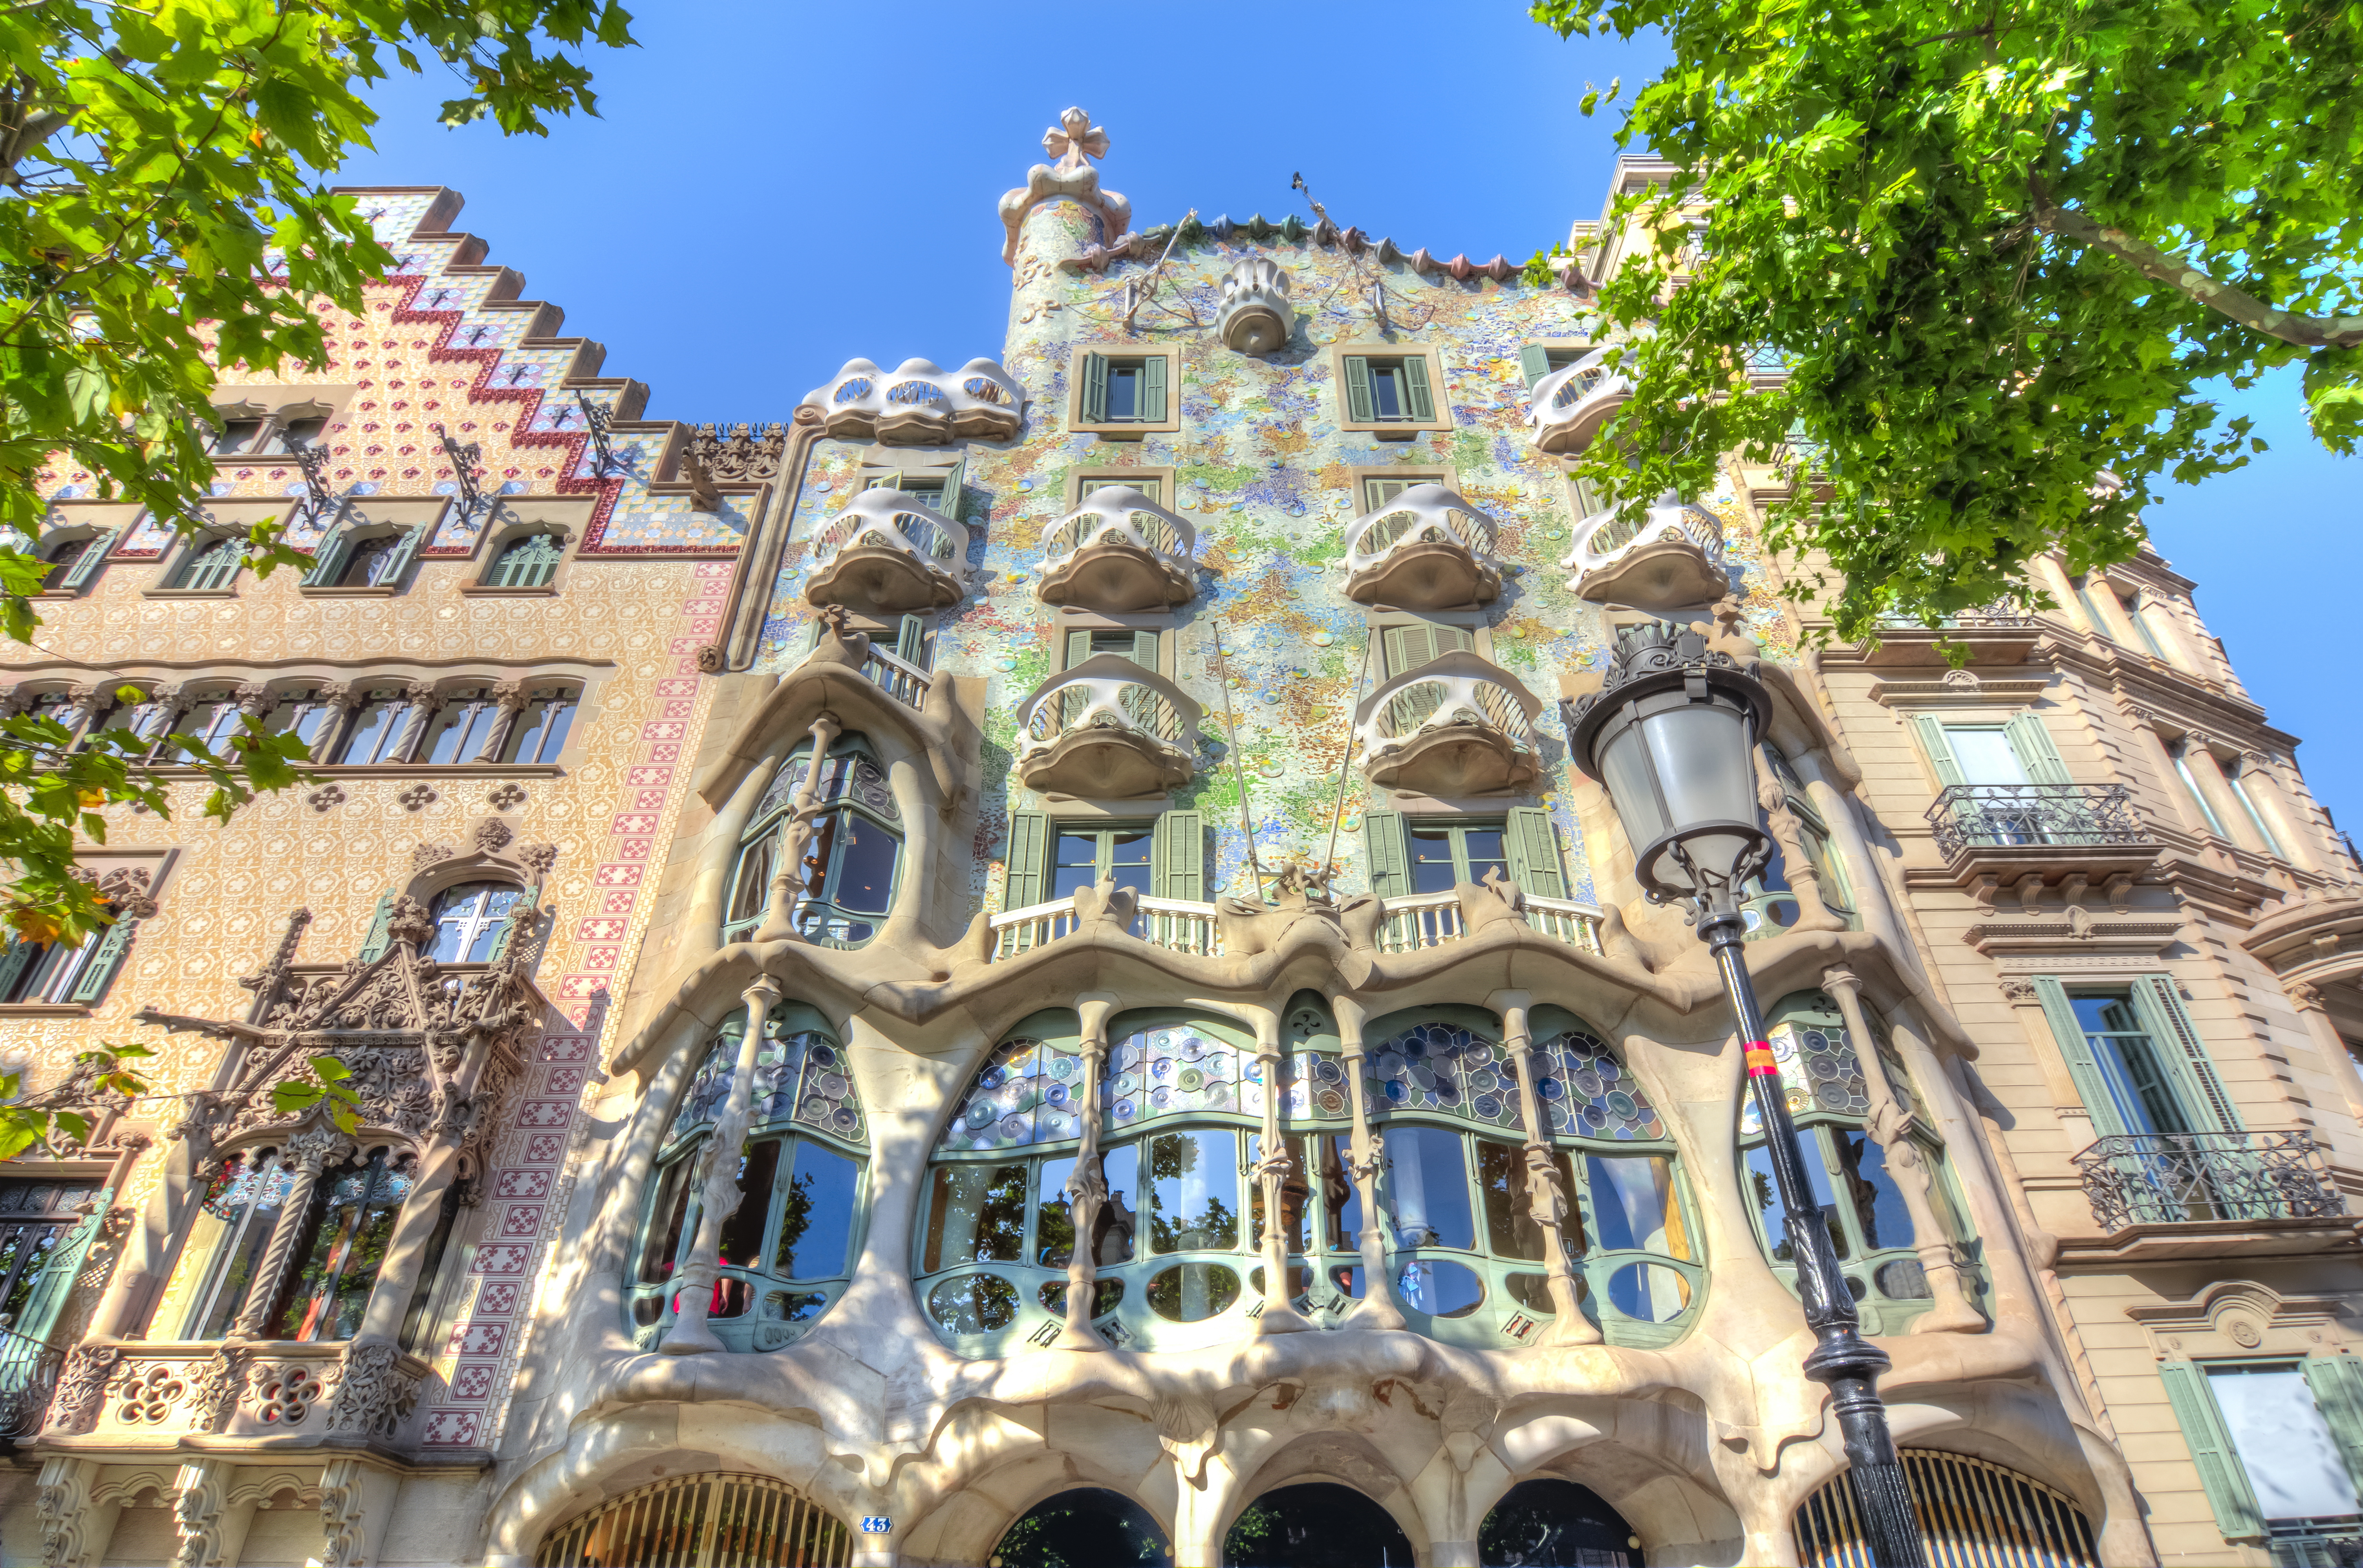 Casa Battlo house, designed by Antonio Gaudi